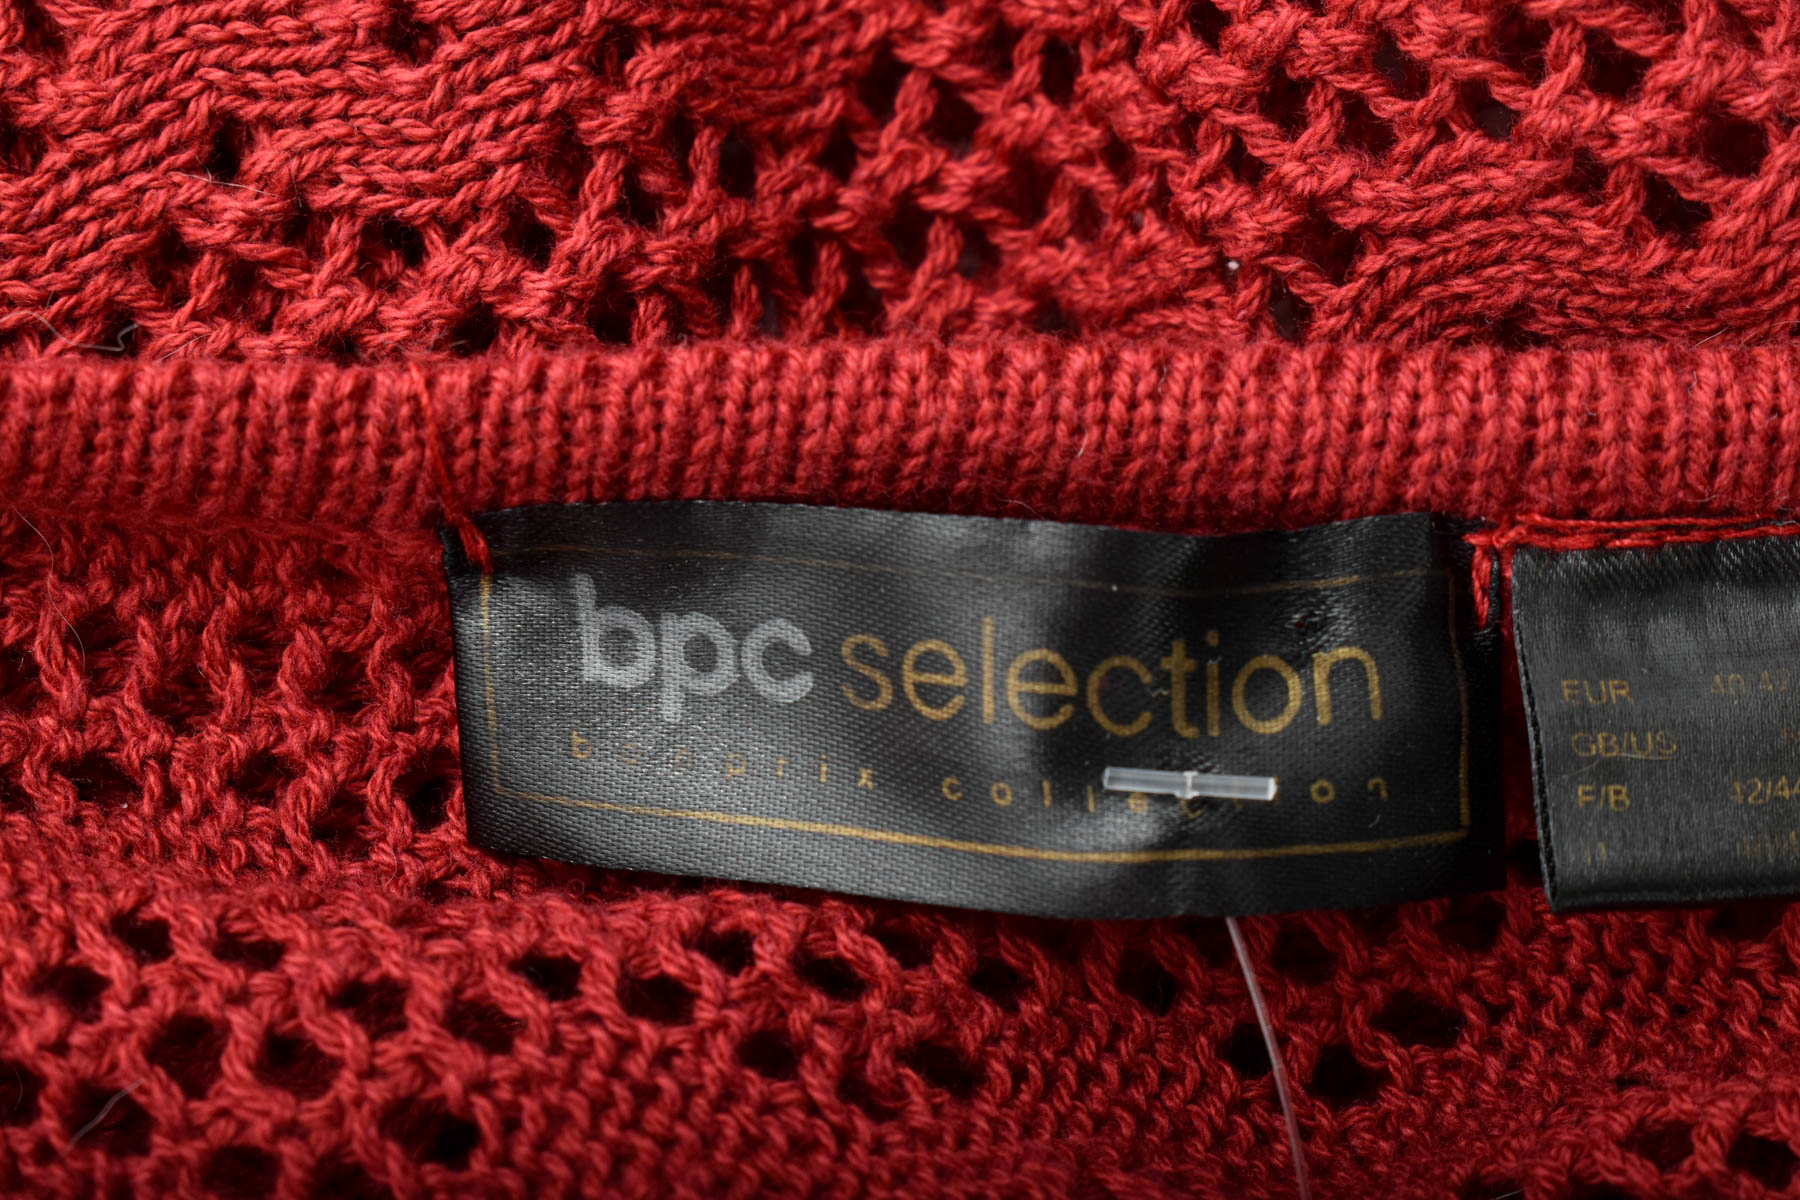 Pulover de damă - Bpc selection bonprix collection - 2